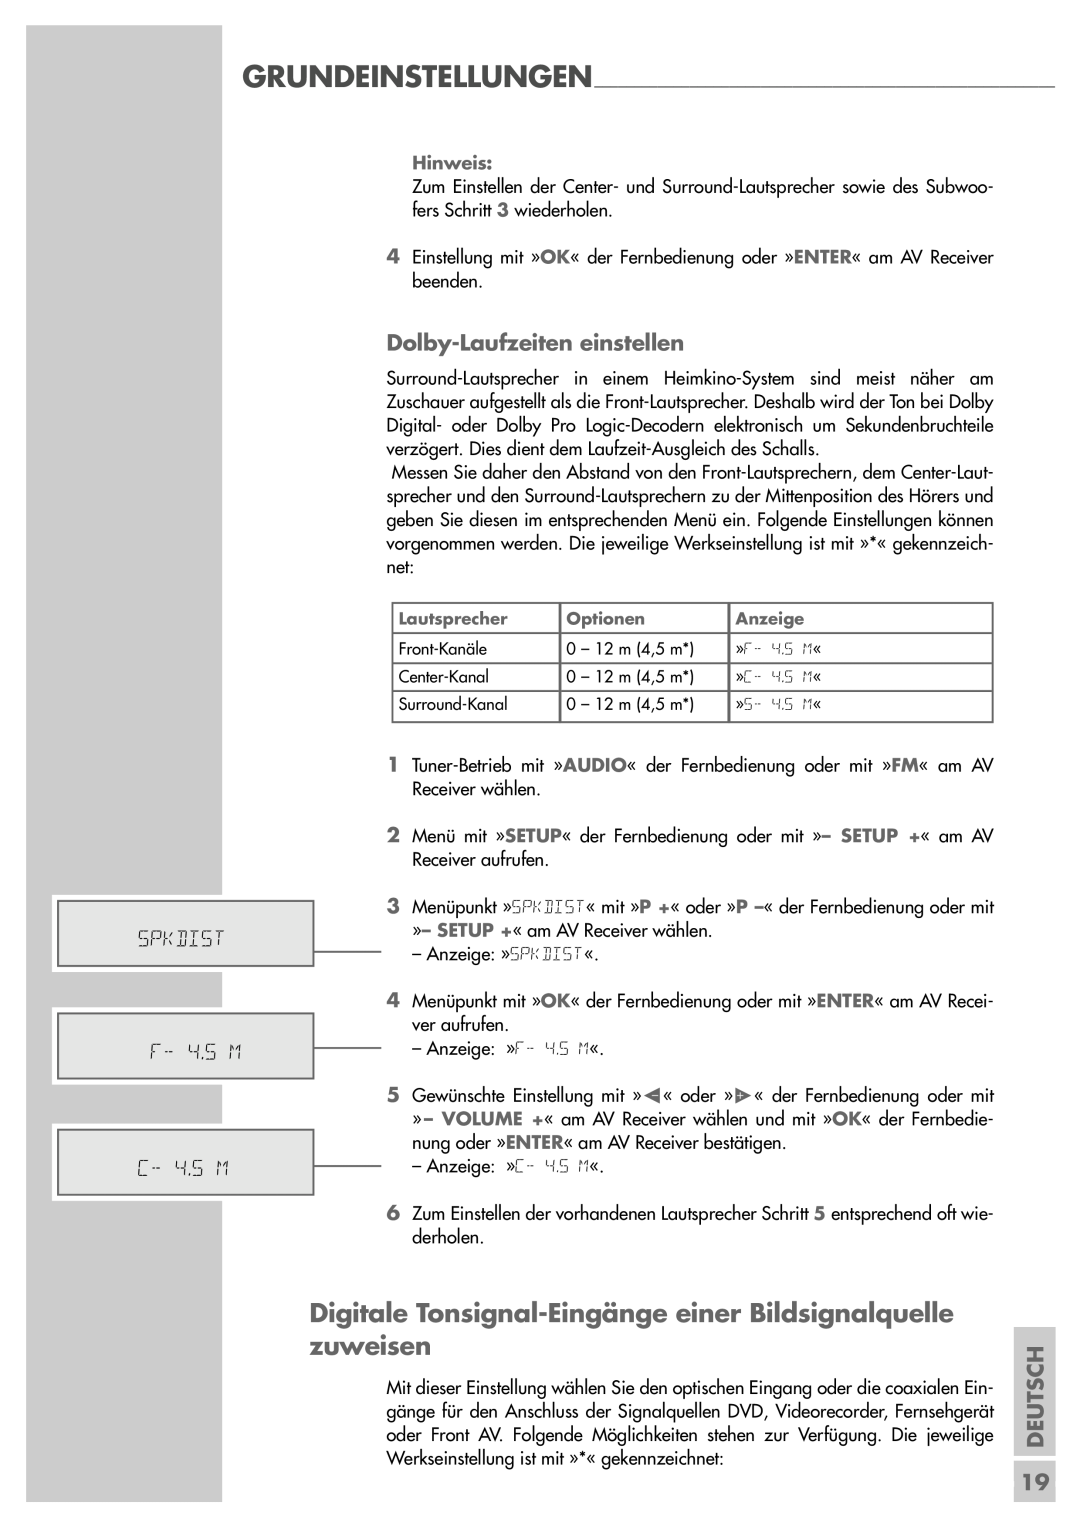 Grundig AVR 5200 DD manual SPKDIST F- 4.5 M C- 4.5 M, Dolby-Laufzeiteneinstellen, Deutsch 